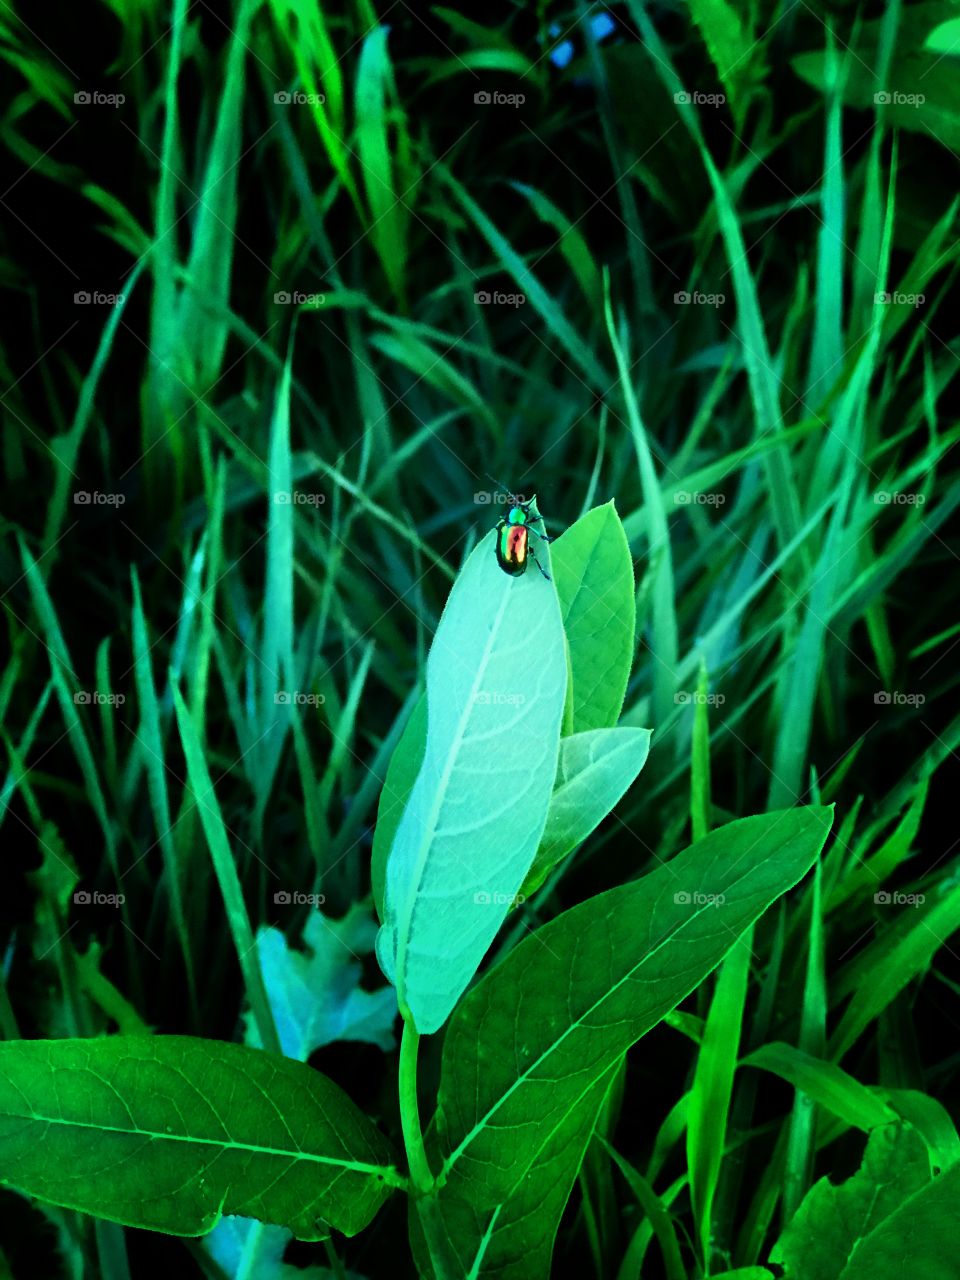 Metallic beetle on a leaf in a green field